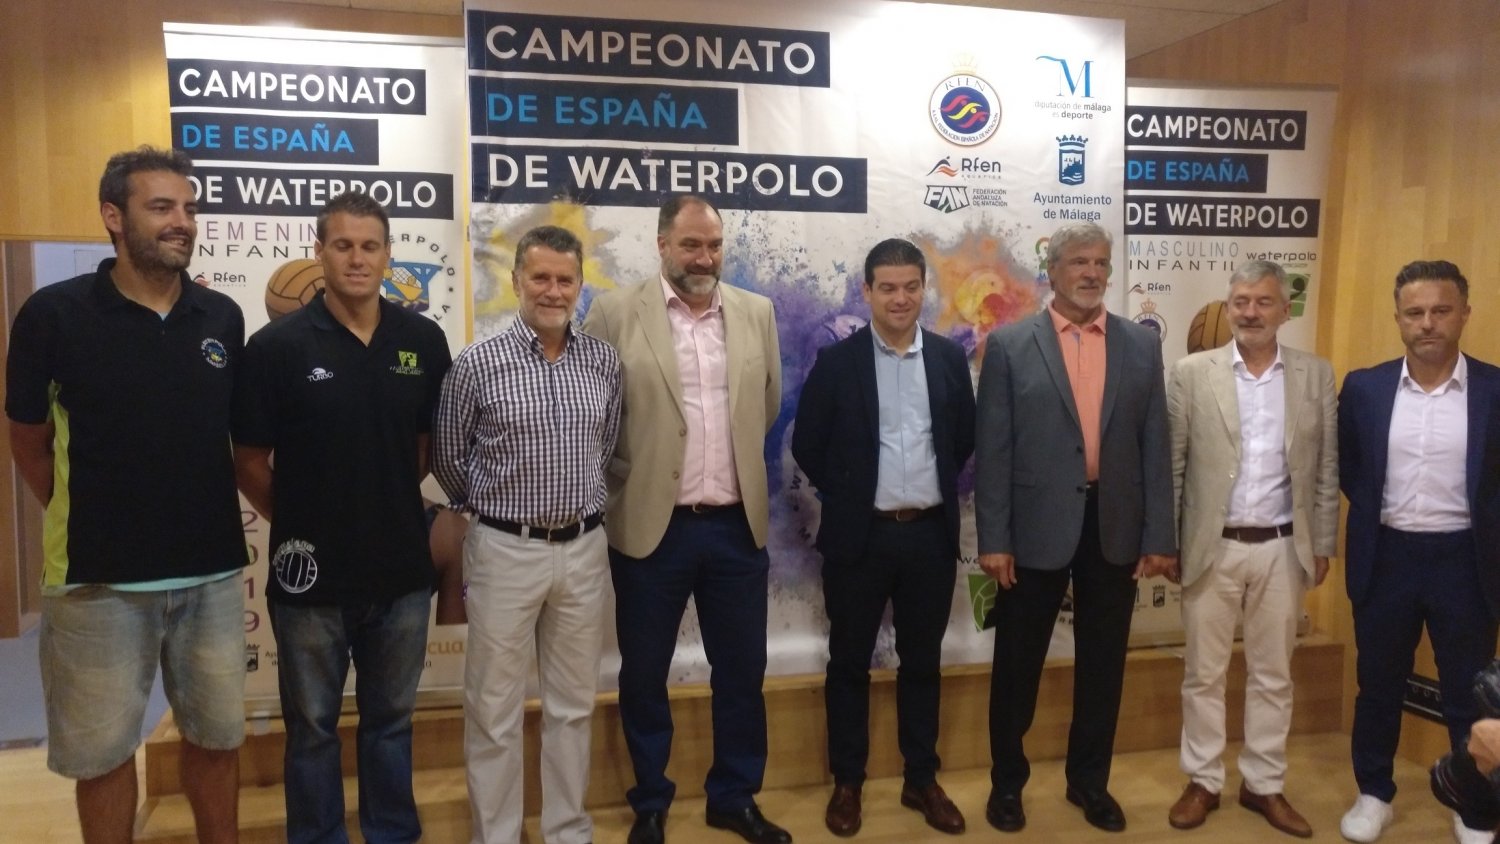 Málaga celebrará del 27 al 30 de junio el campeonato de España de Waterpolo en las categorías infantil masculino y femenino de forma simultánea